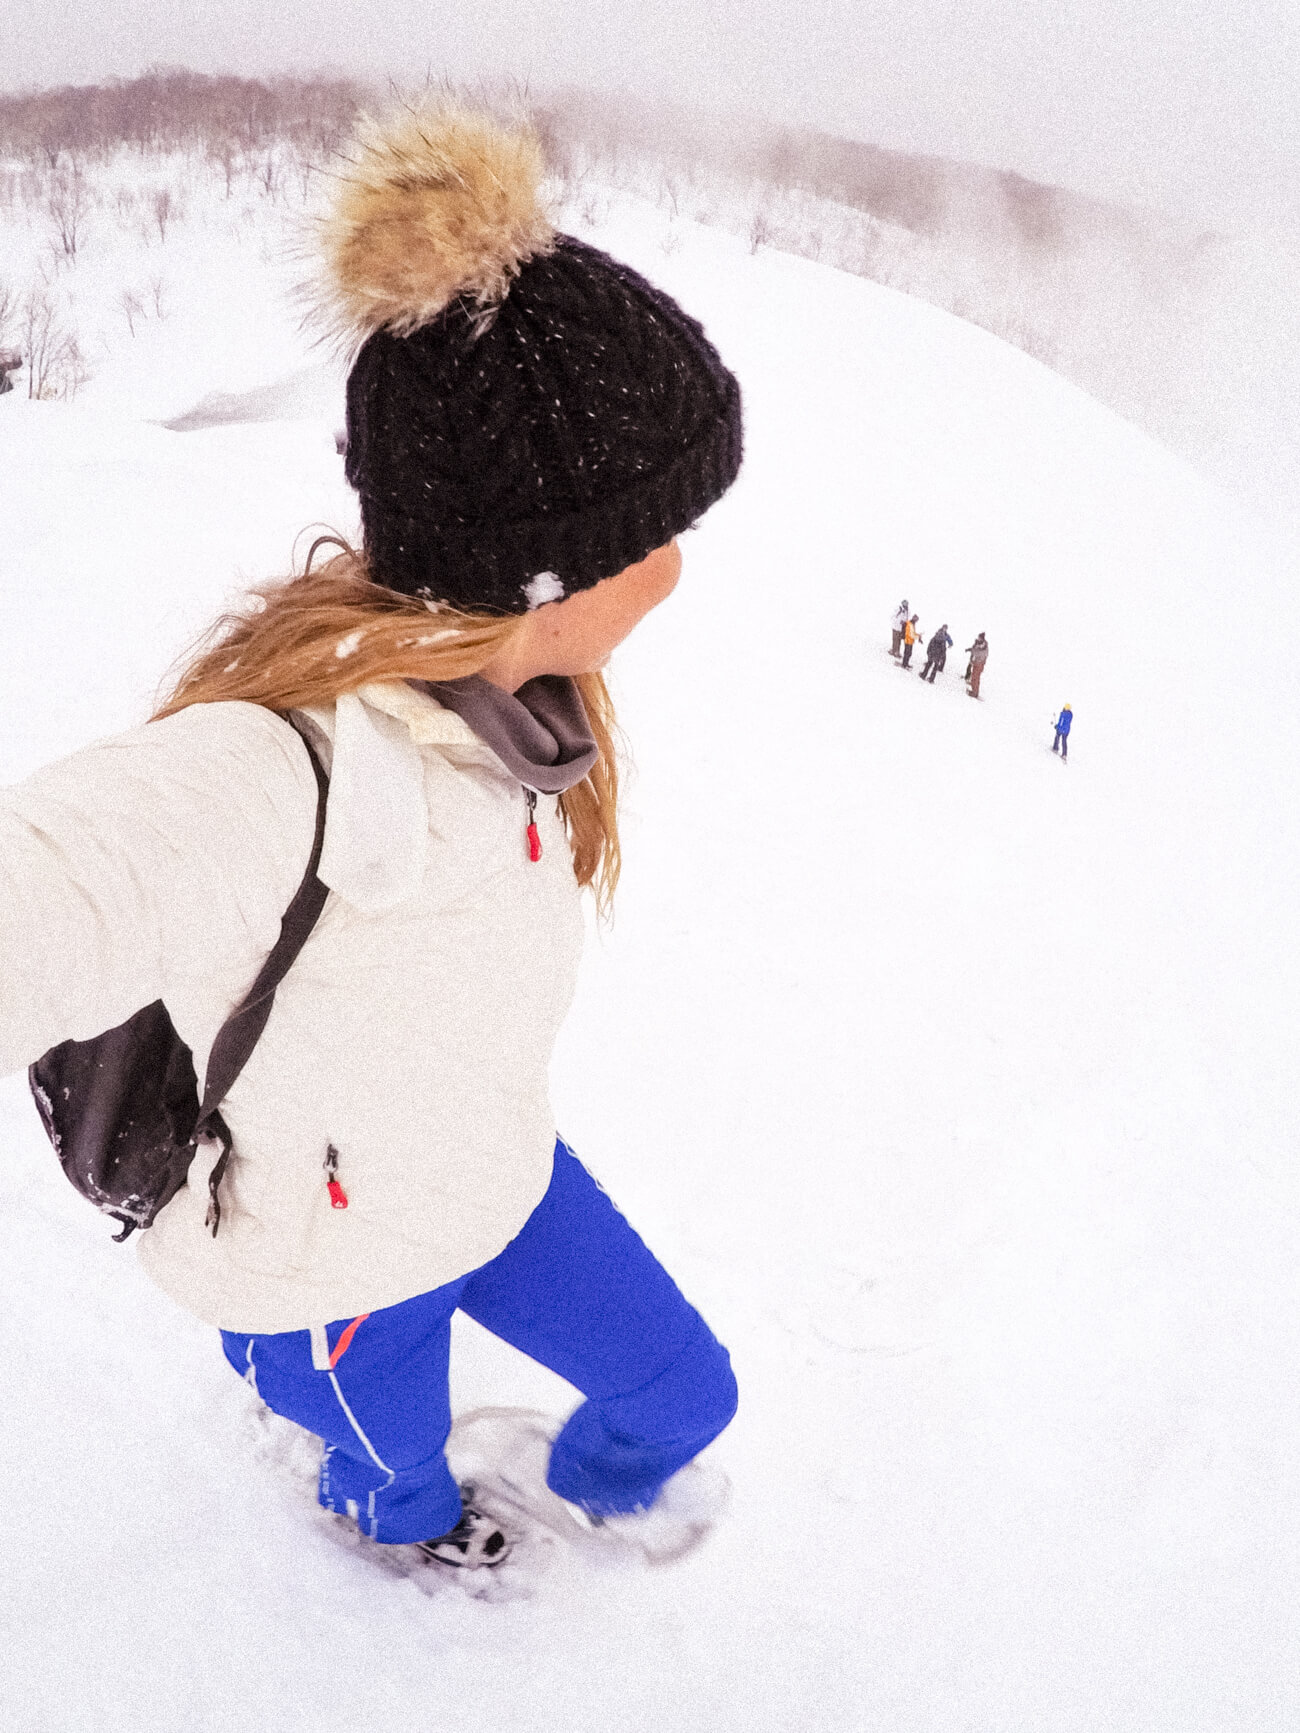 Skiing in Niseko, Japan with GoPro and The Ski Week